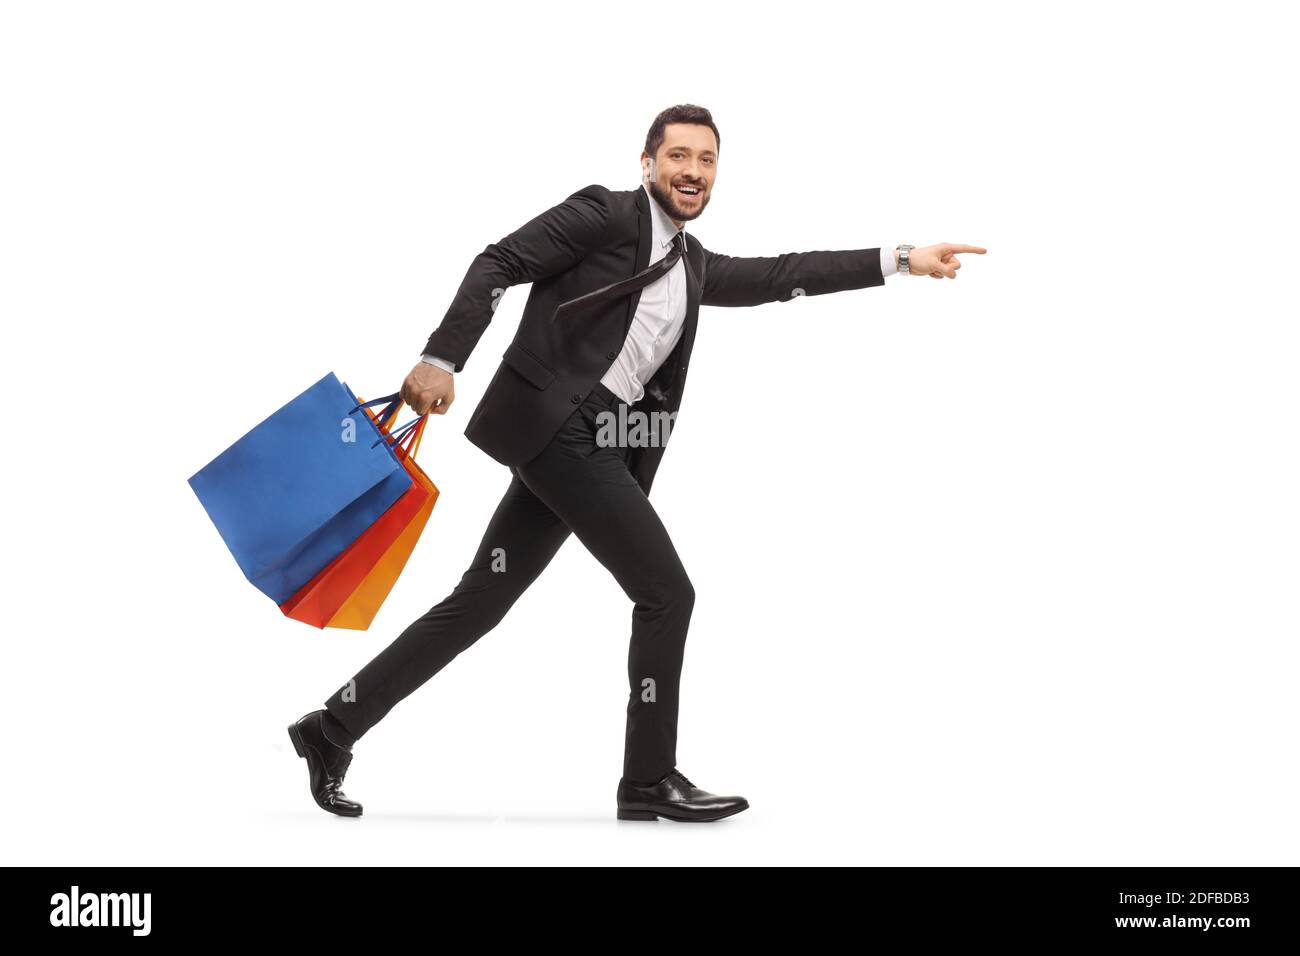 Homme dans un costume noir courant avec des sacs de shopping et pointage isolé sur fond blanc Banque D'Images